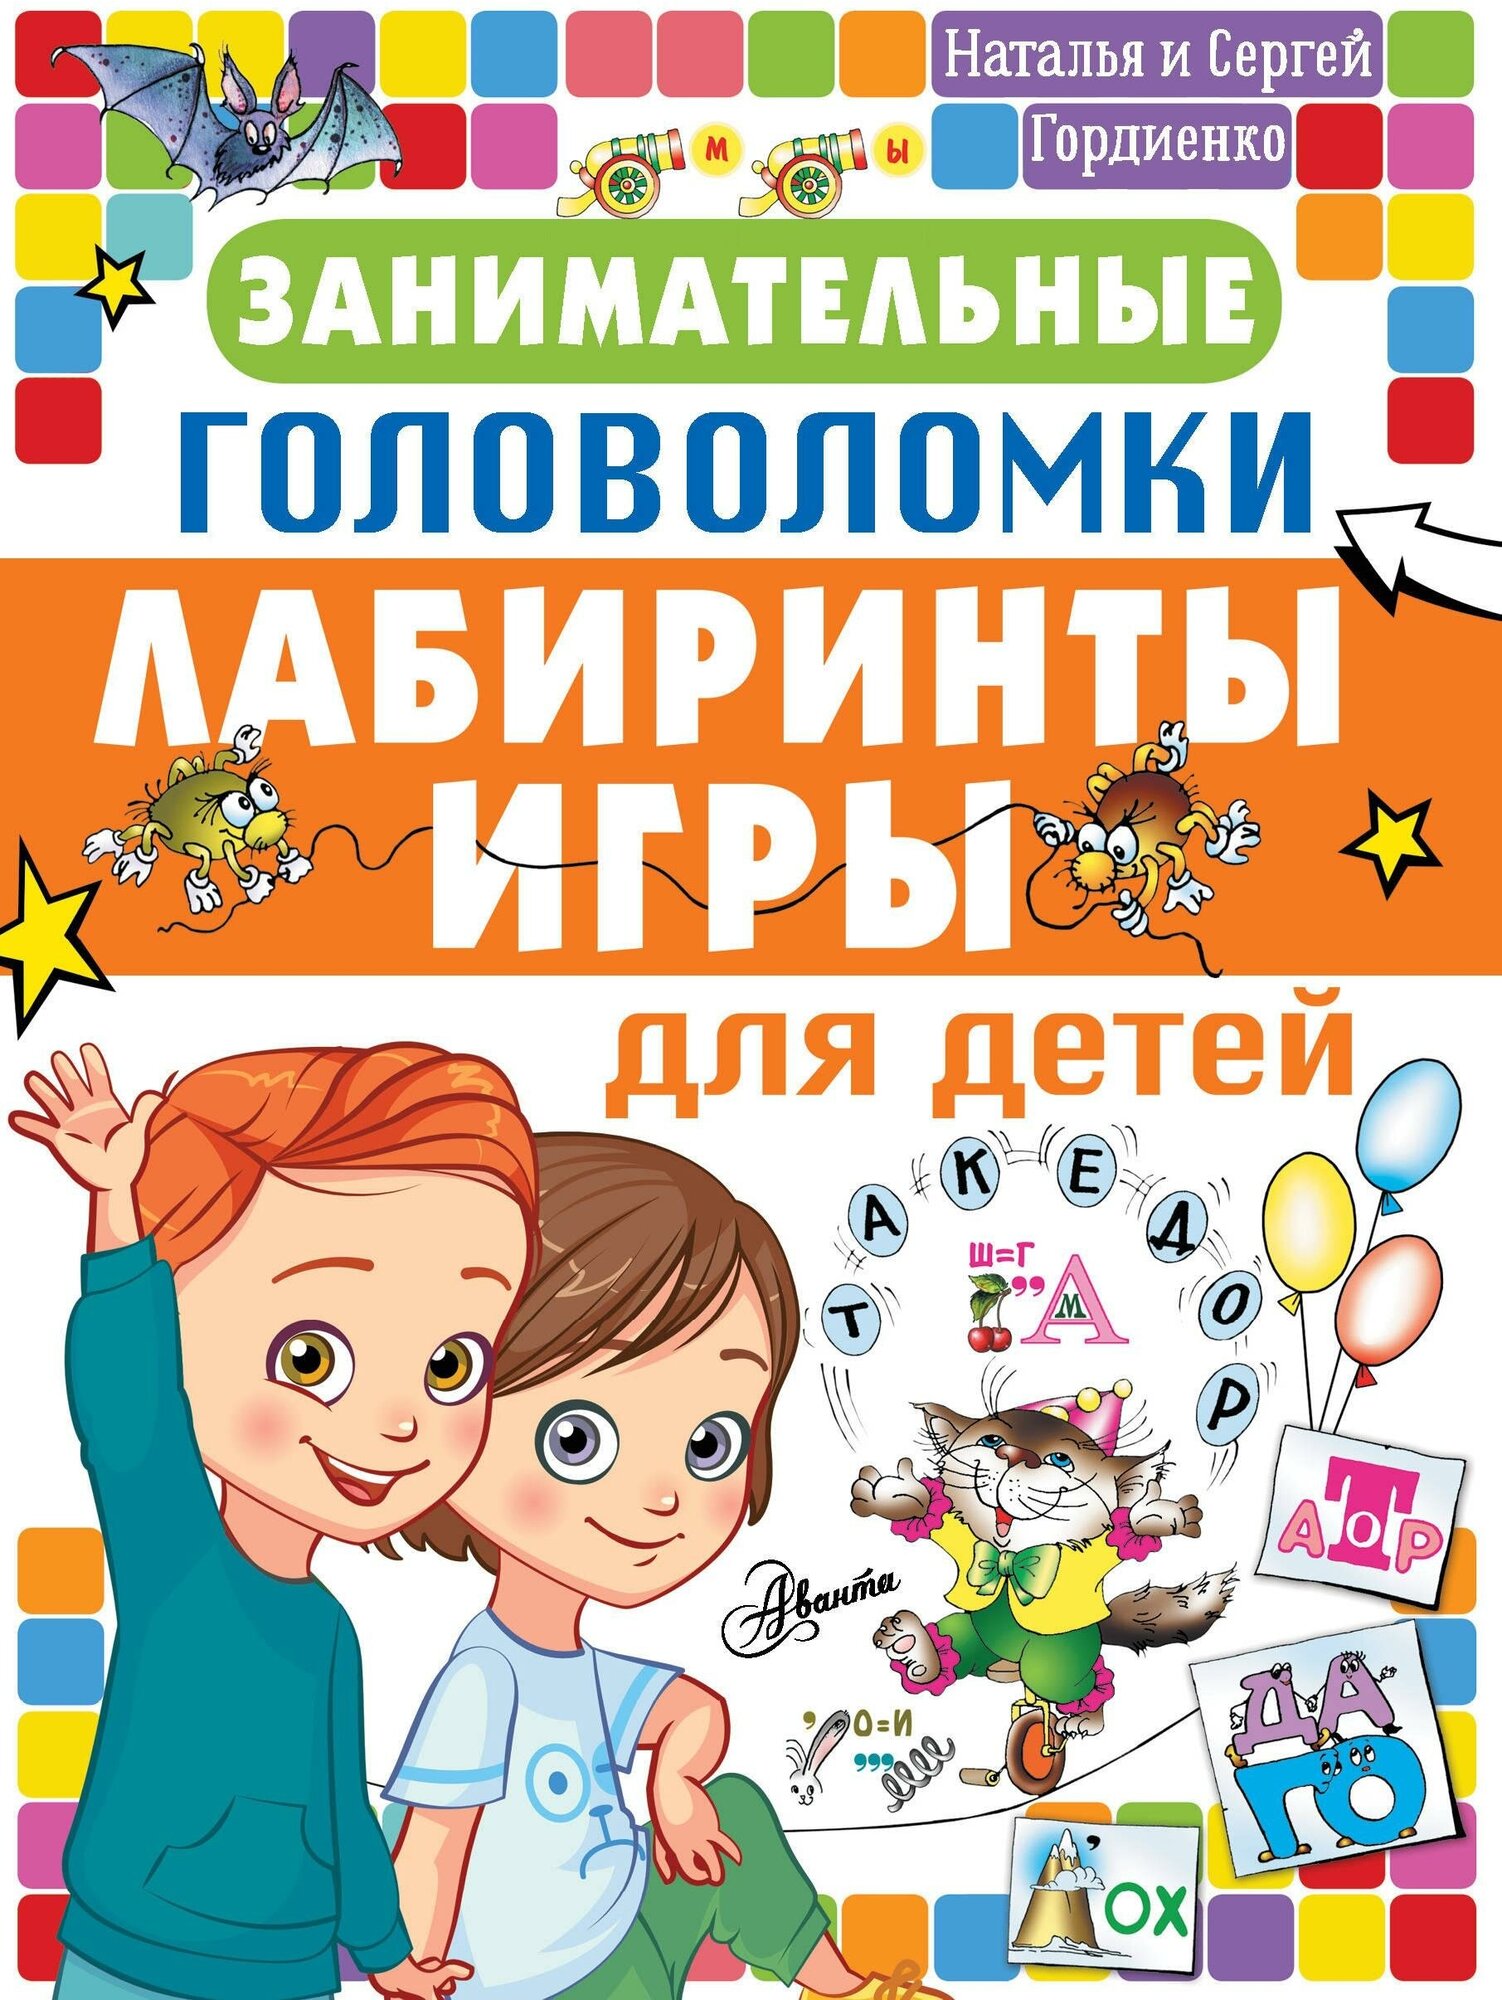 Гордиенко Н. И. Занимательные головоломки, лабиринты, игры для детей. Головоломки и логические игры для детей